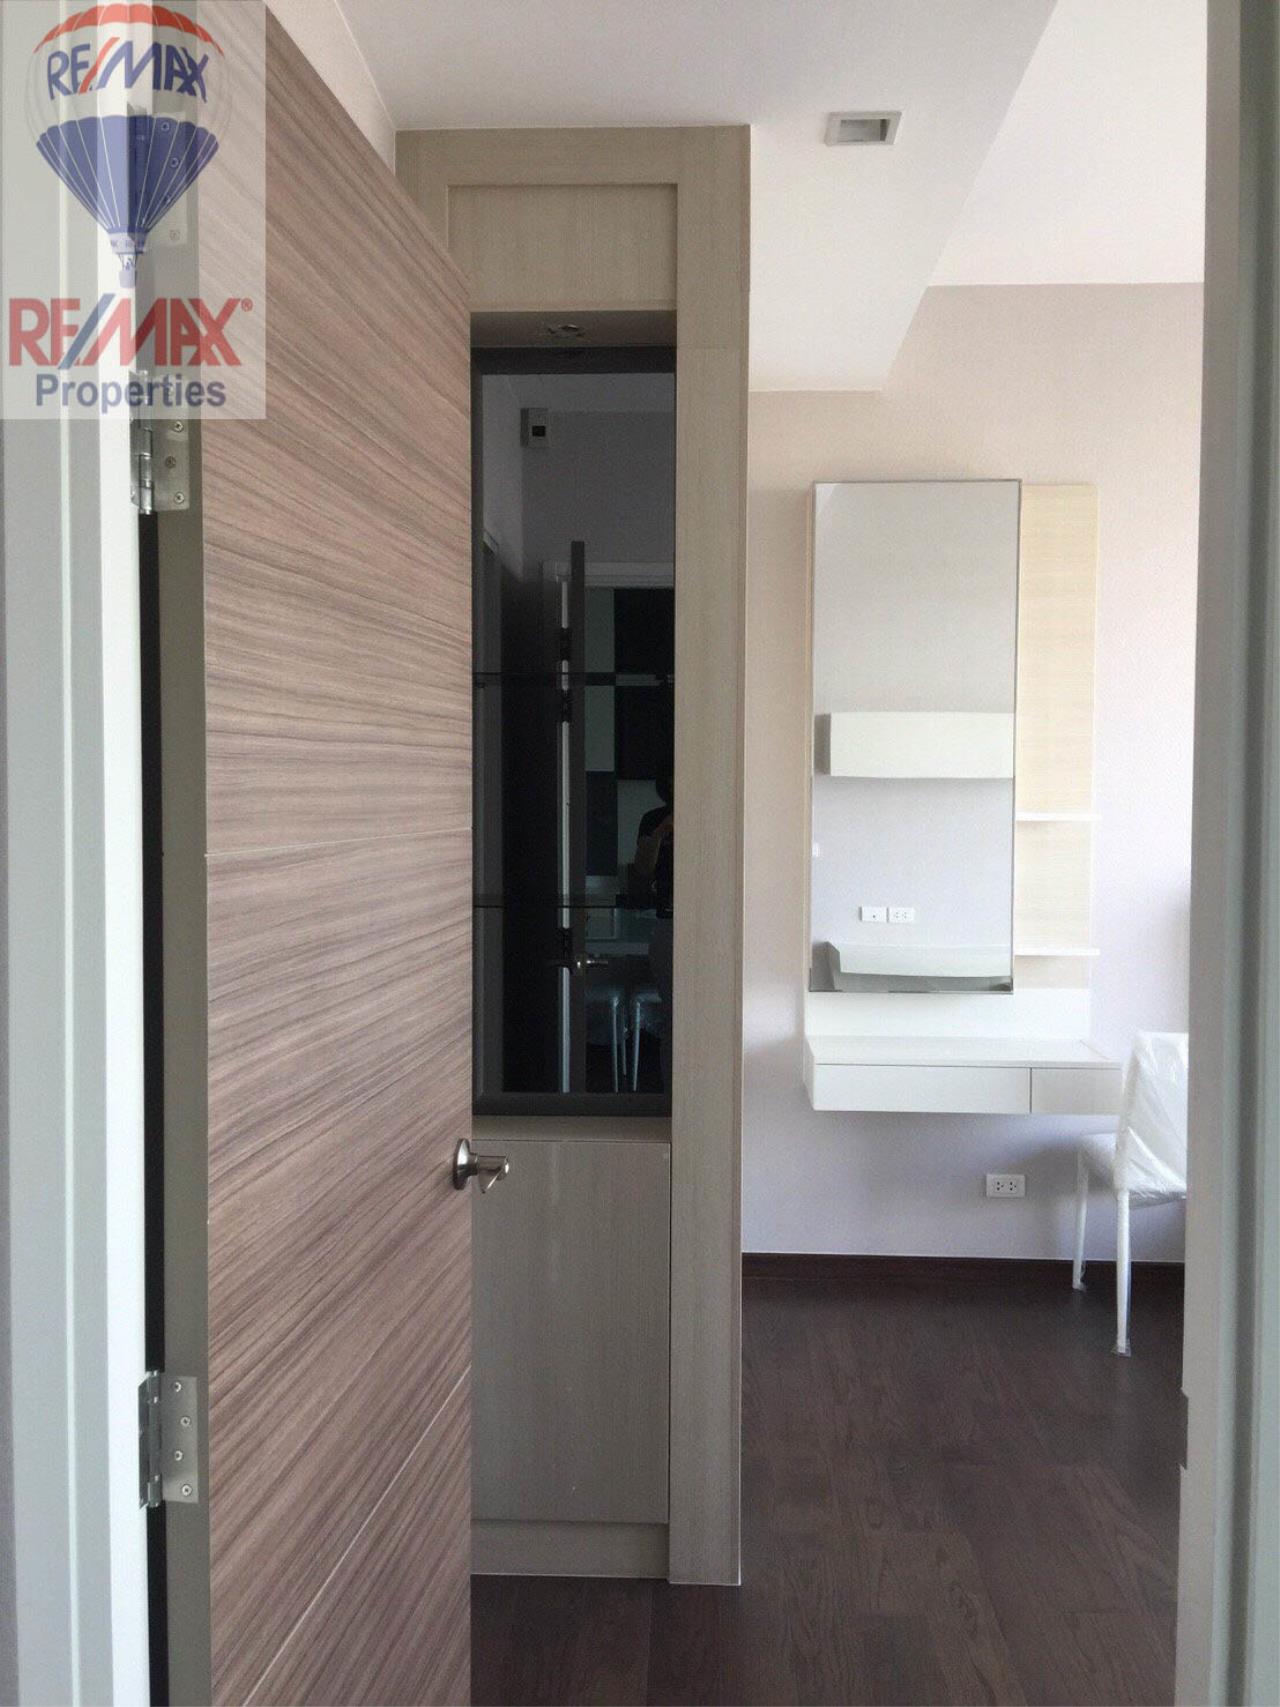 RE/MAX Properties Agency's Q Asoke 1 Bedroom For Rent 7